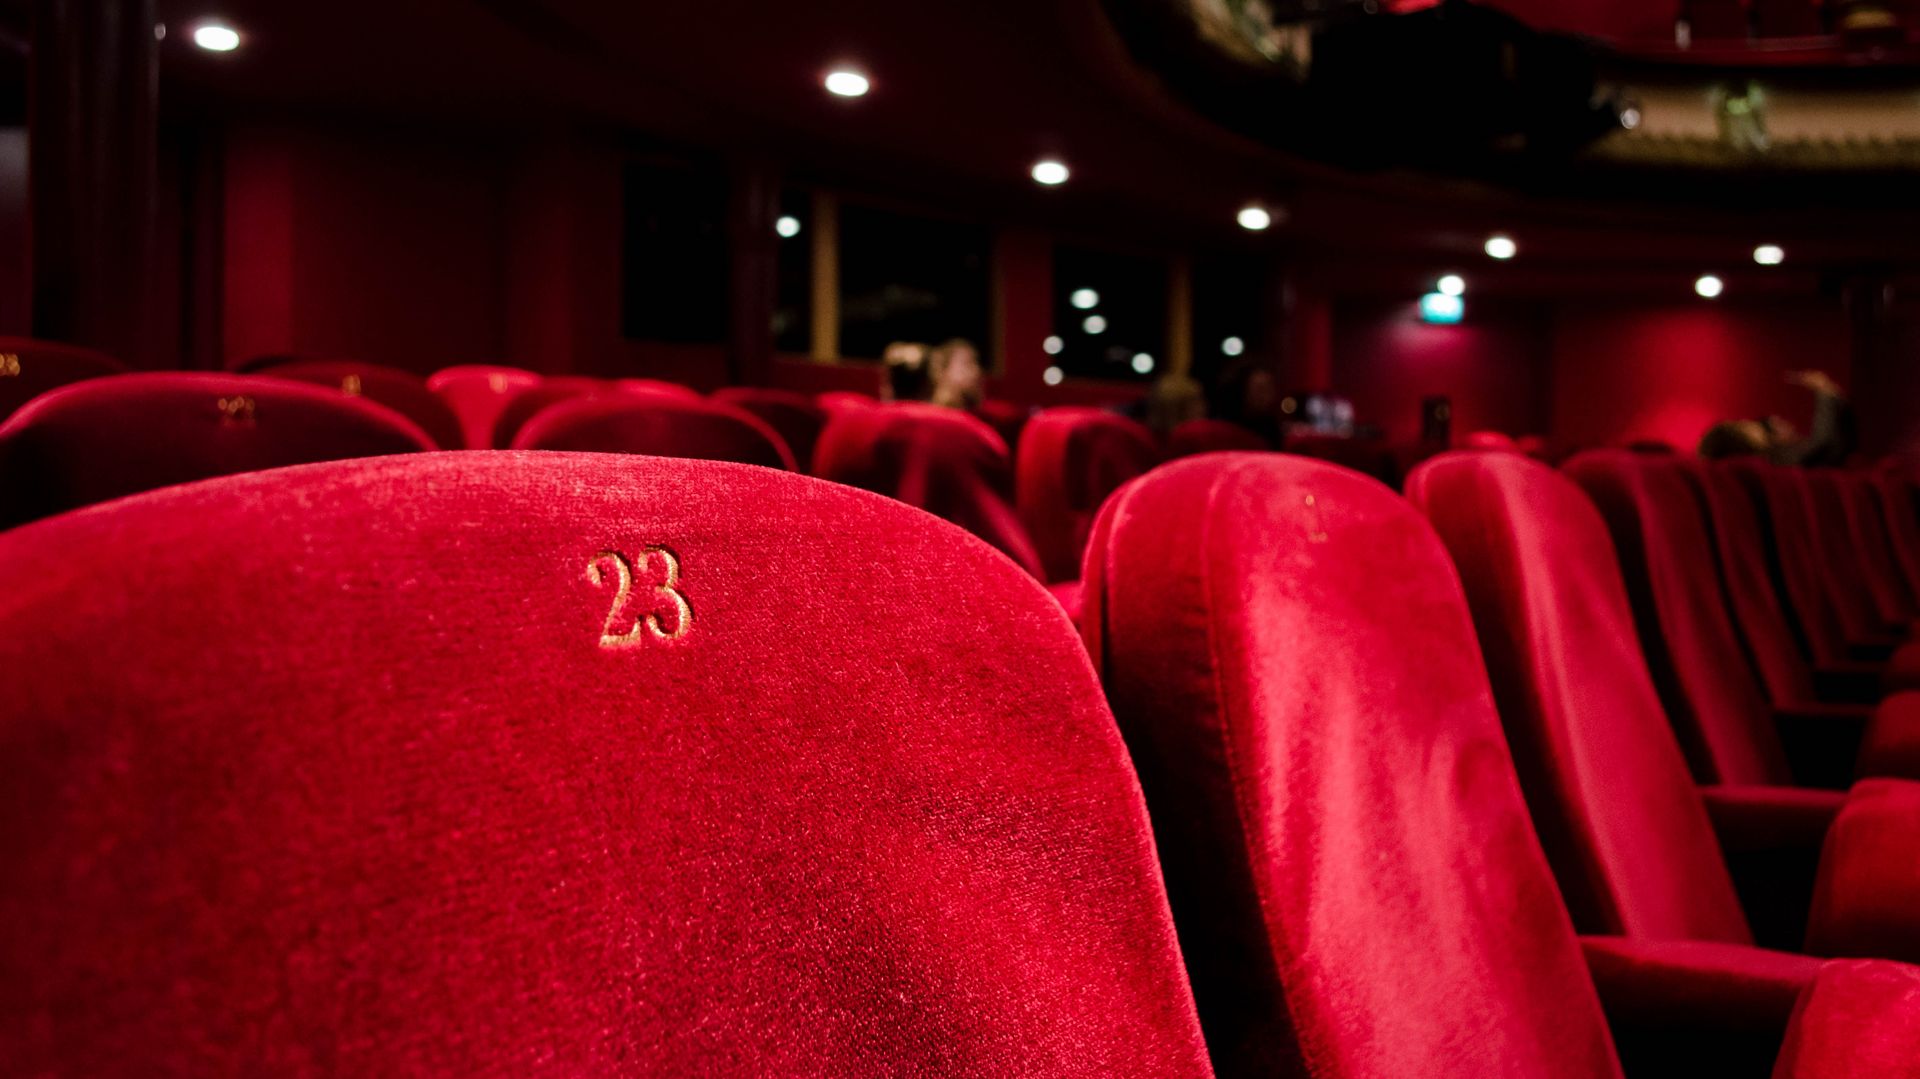 Rijen rode zitjes in een donkere theaterzaal.